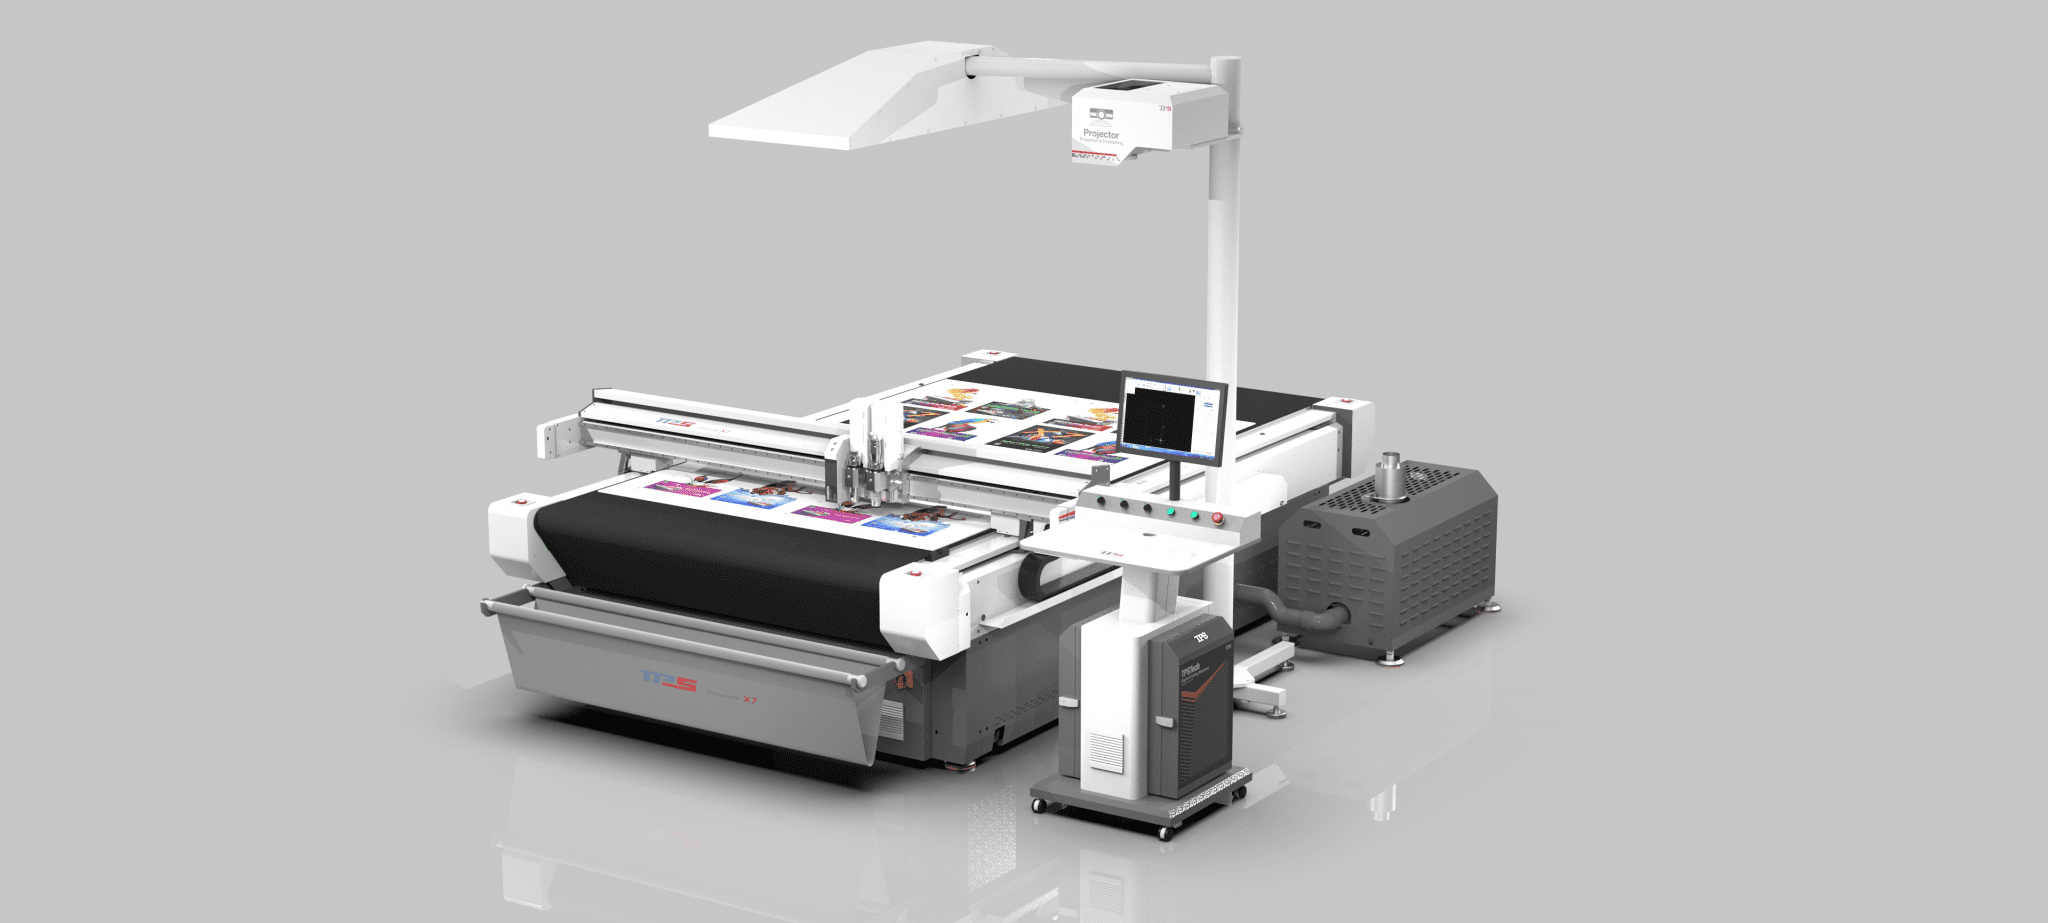 X7 digital cutting machine